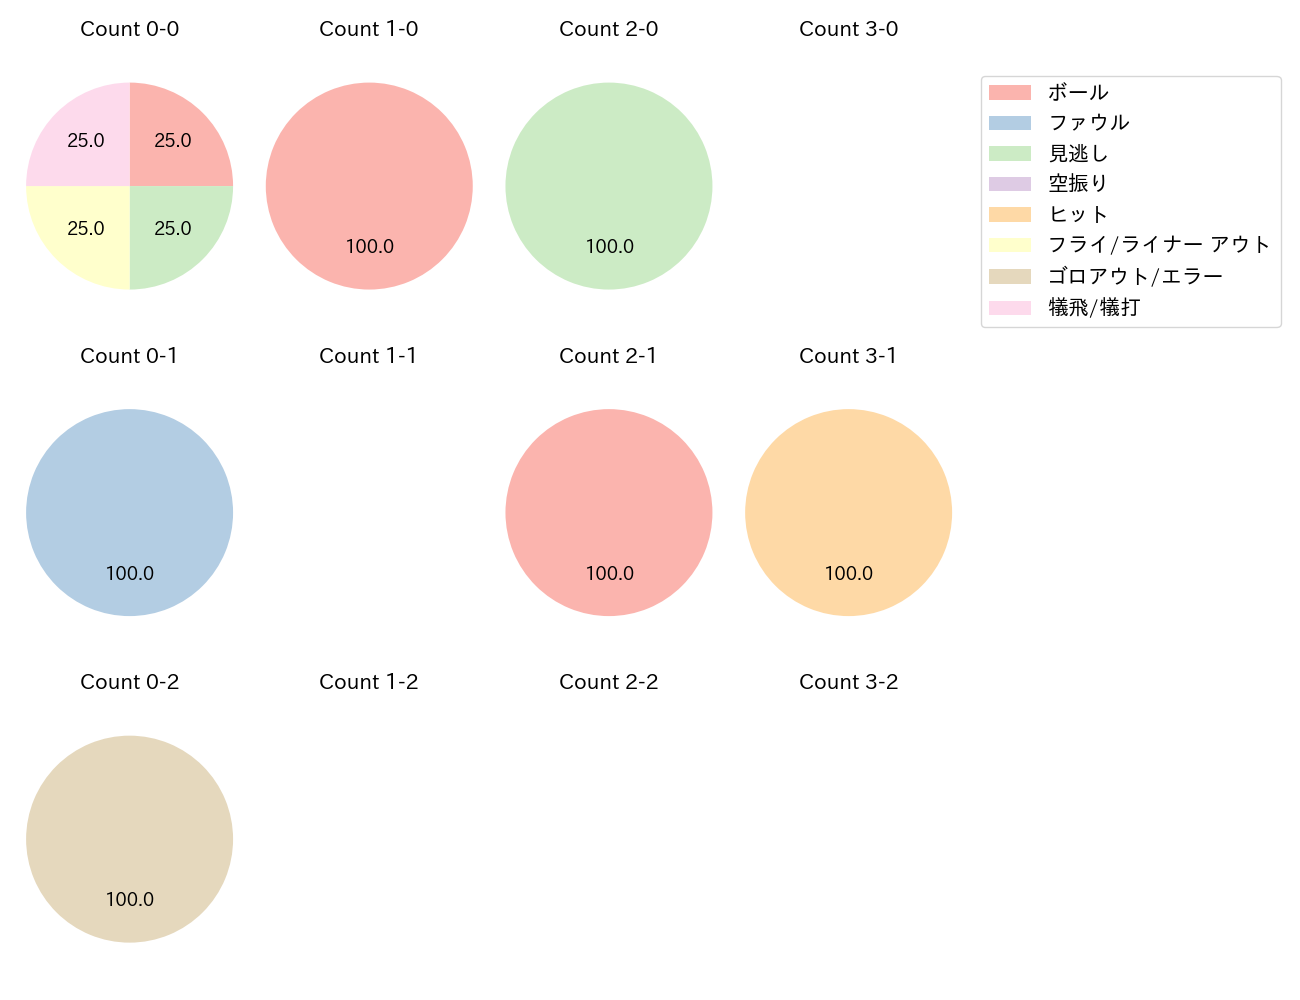 田中 和基の球数分布(2023年6月)